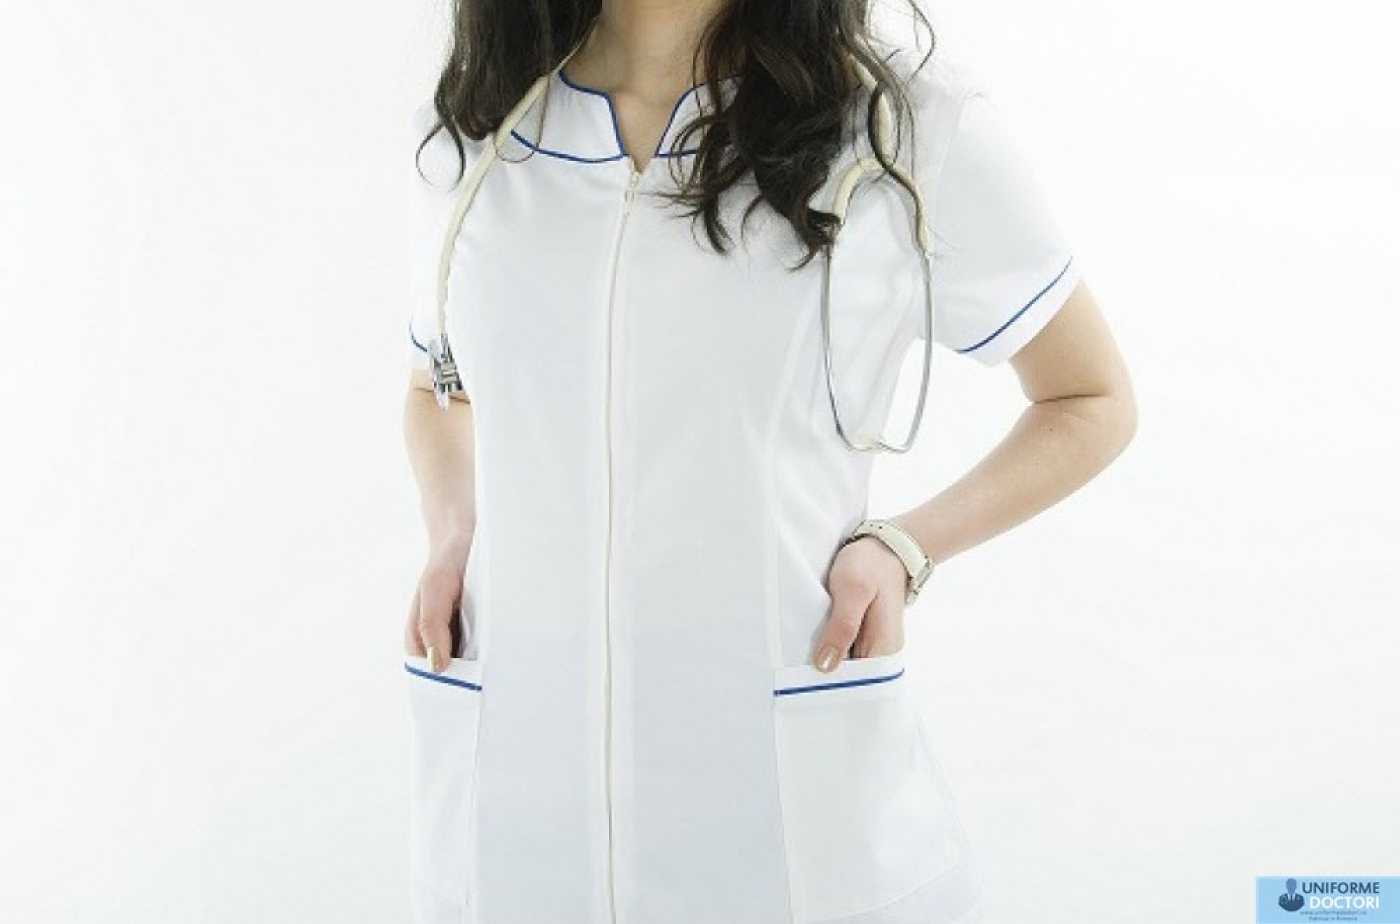 Uniforme medicale - Halat medical cu maneca scurta, guler tunica si fermoar